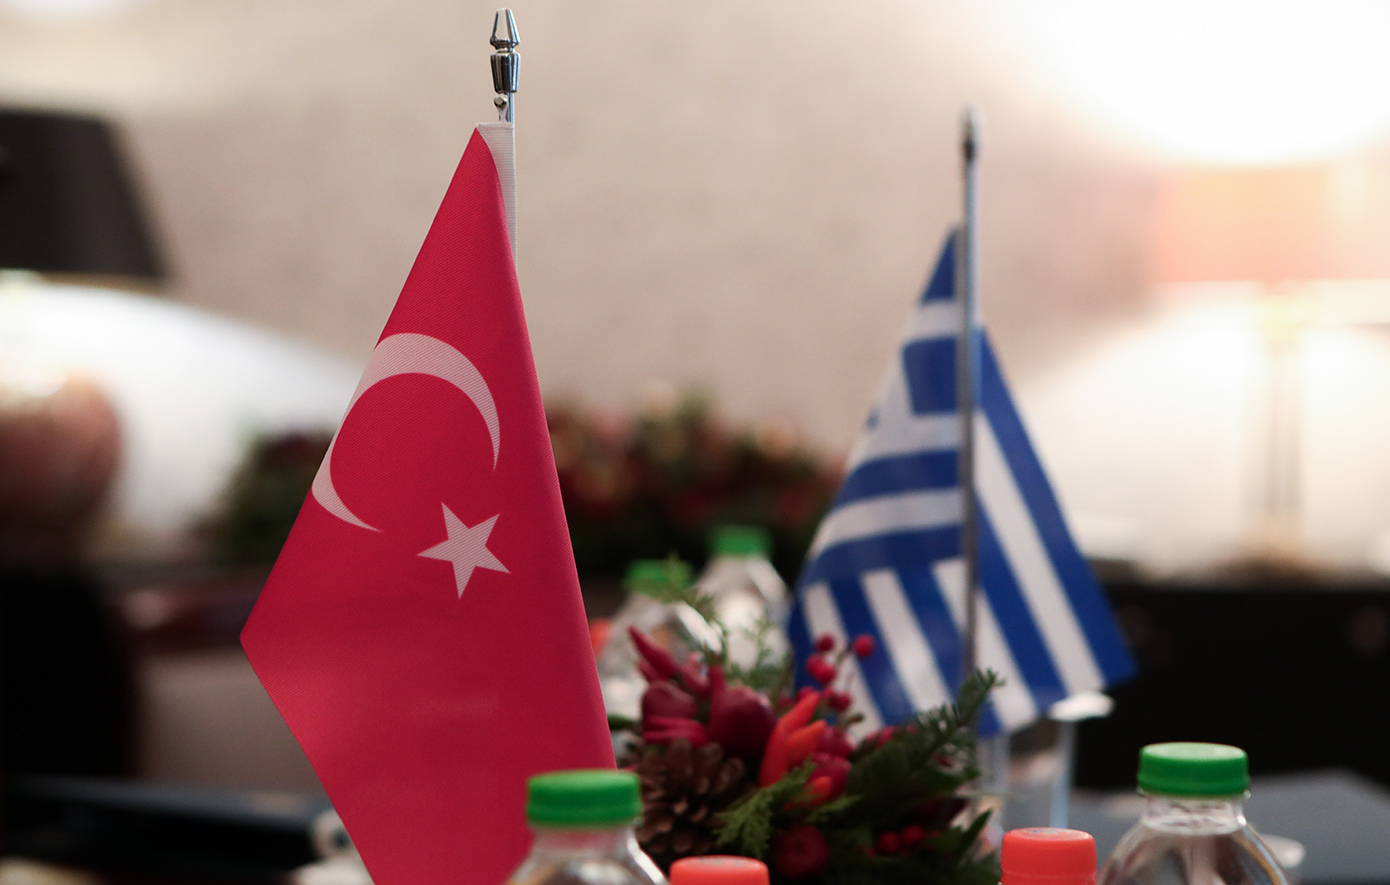 Ποδοσφαιρικός αγώνας των Ενόπλων Δυνάμεων Ελλάδας &#8211; Τουρκίας προγραμματίζεται στο πλαίσιο των Μέτρων Οικοδόμησης Εμπιστοσύνης